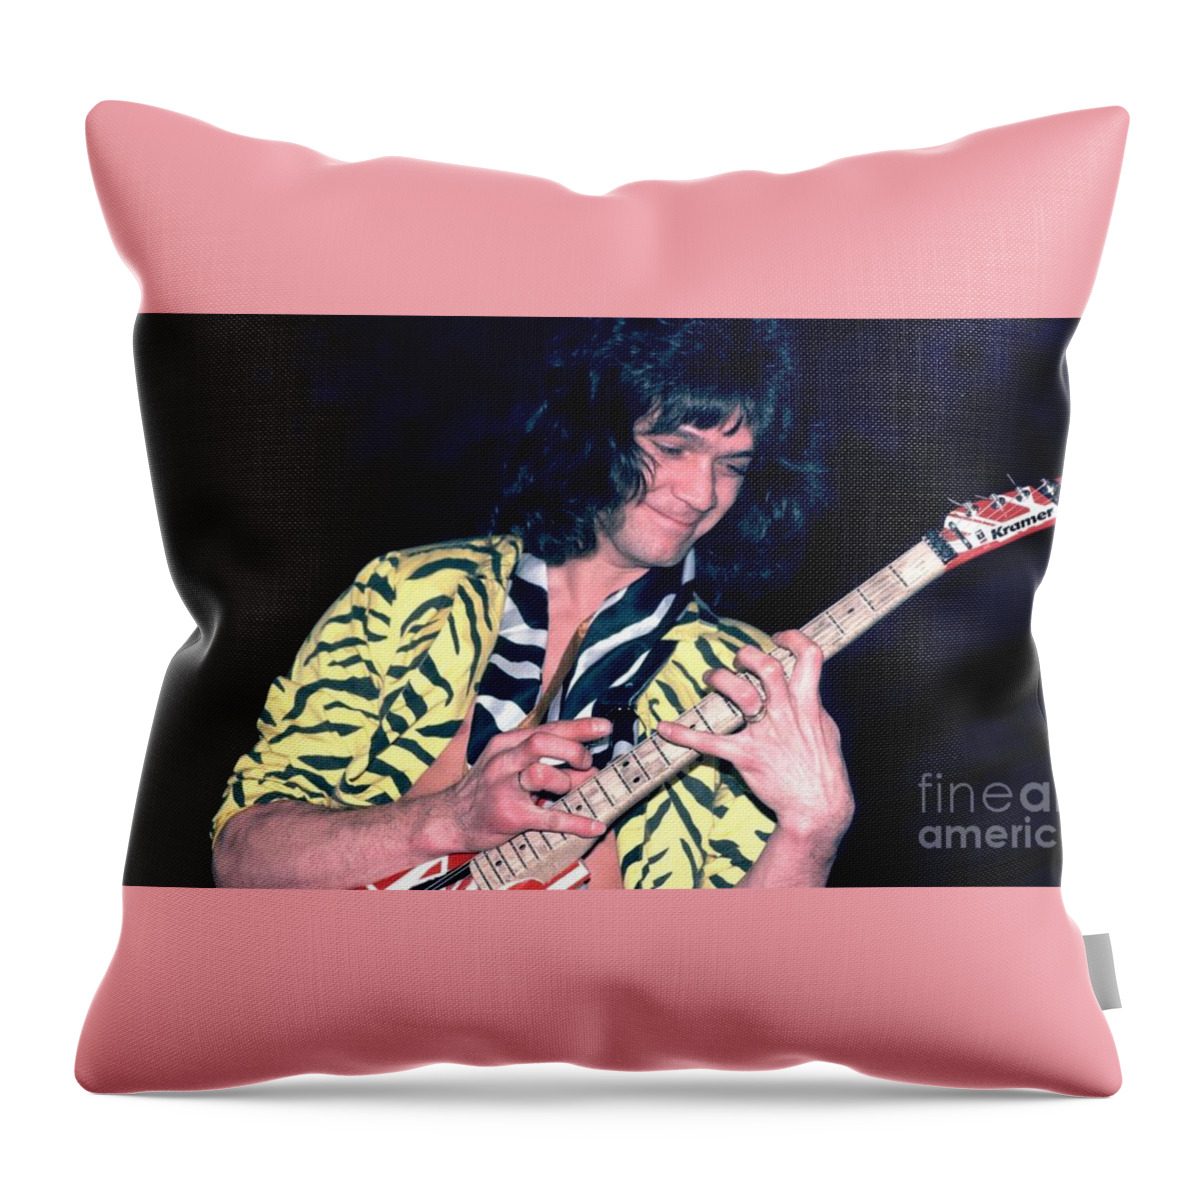 Eddie Throw Pillow featuring the photograph Eddie Van Halen by Action